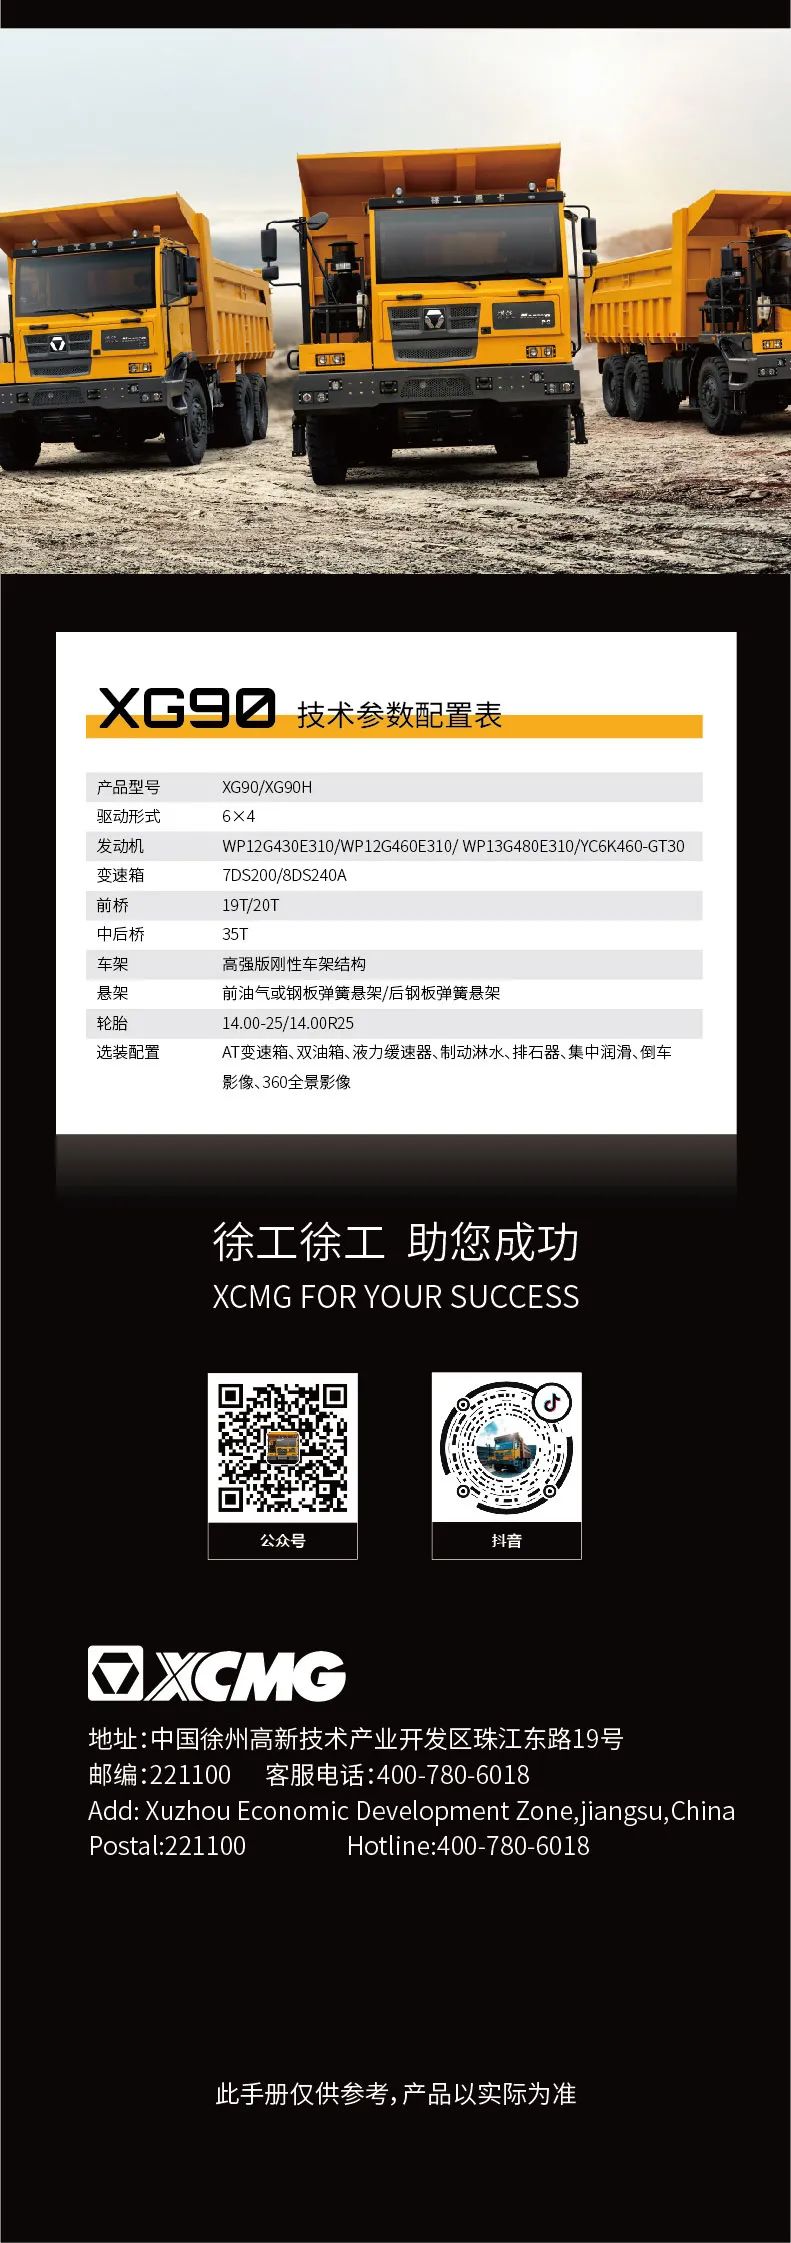 2021-01-17 来源:中国工程机械商贸网 分享: 标签:徐工矿卡xg